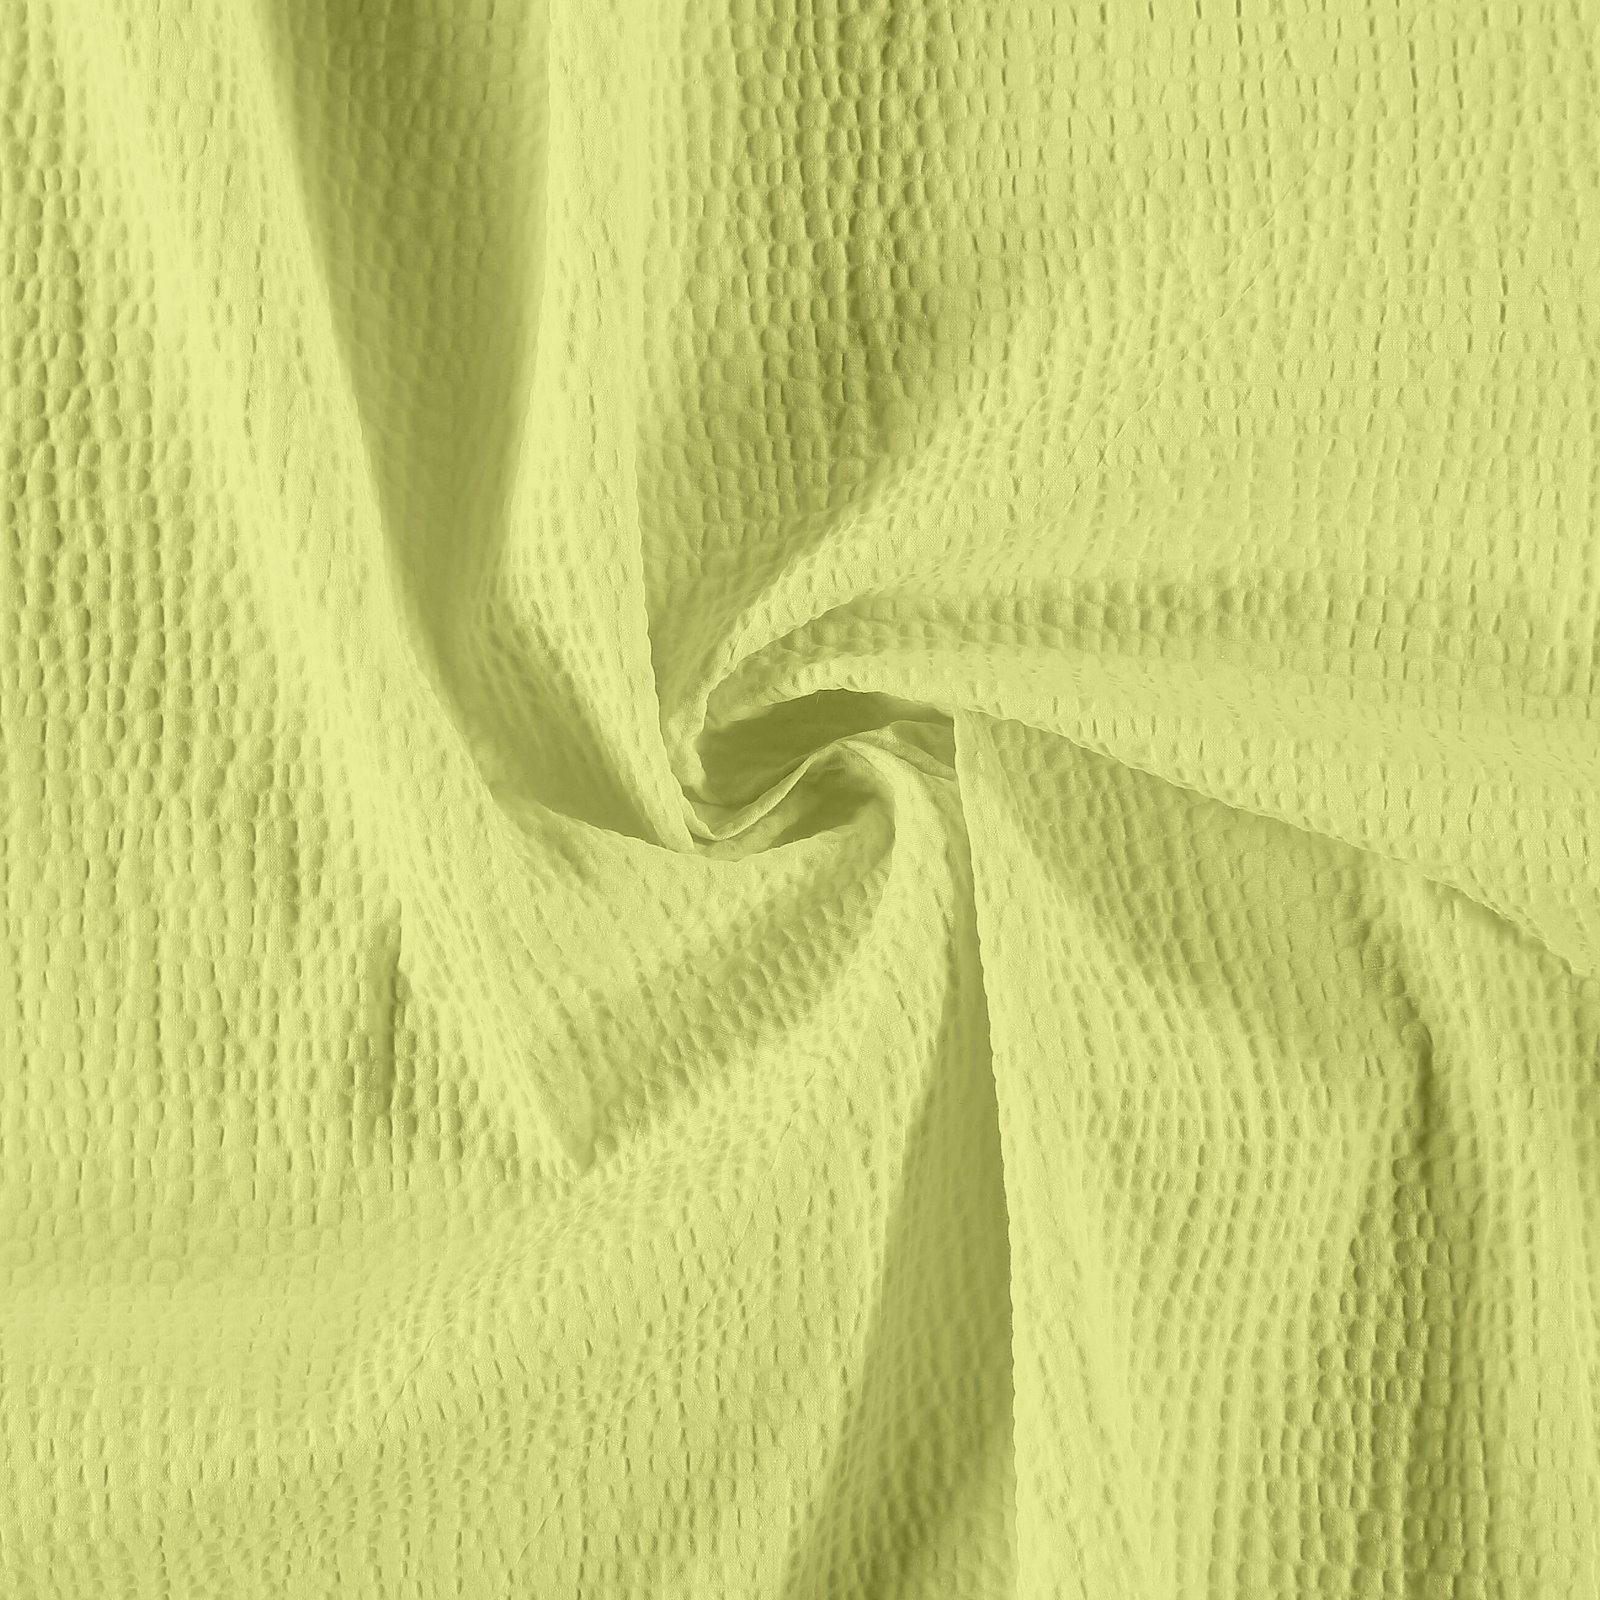 Vevet bomull m krepp effekt pastellgrønn 501959_pack